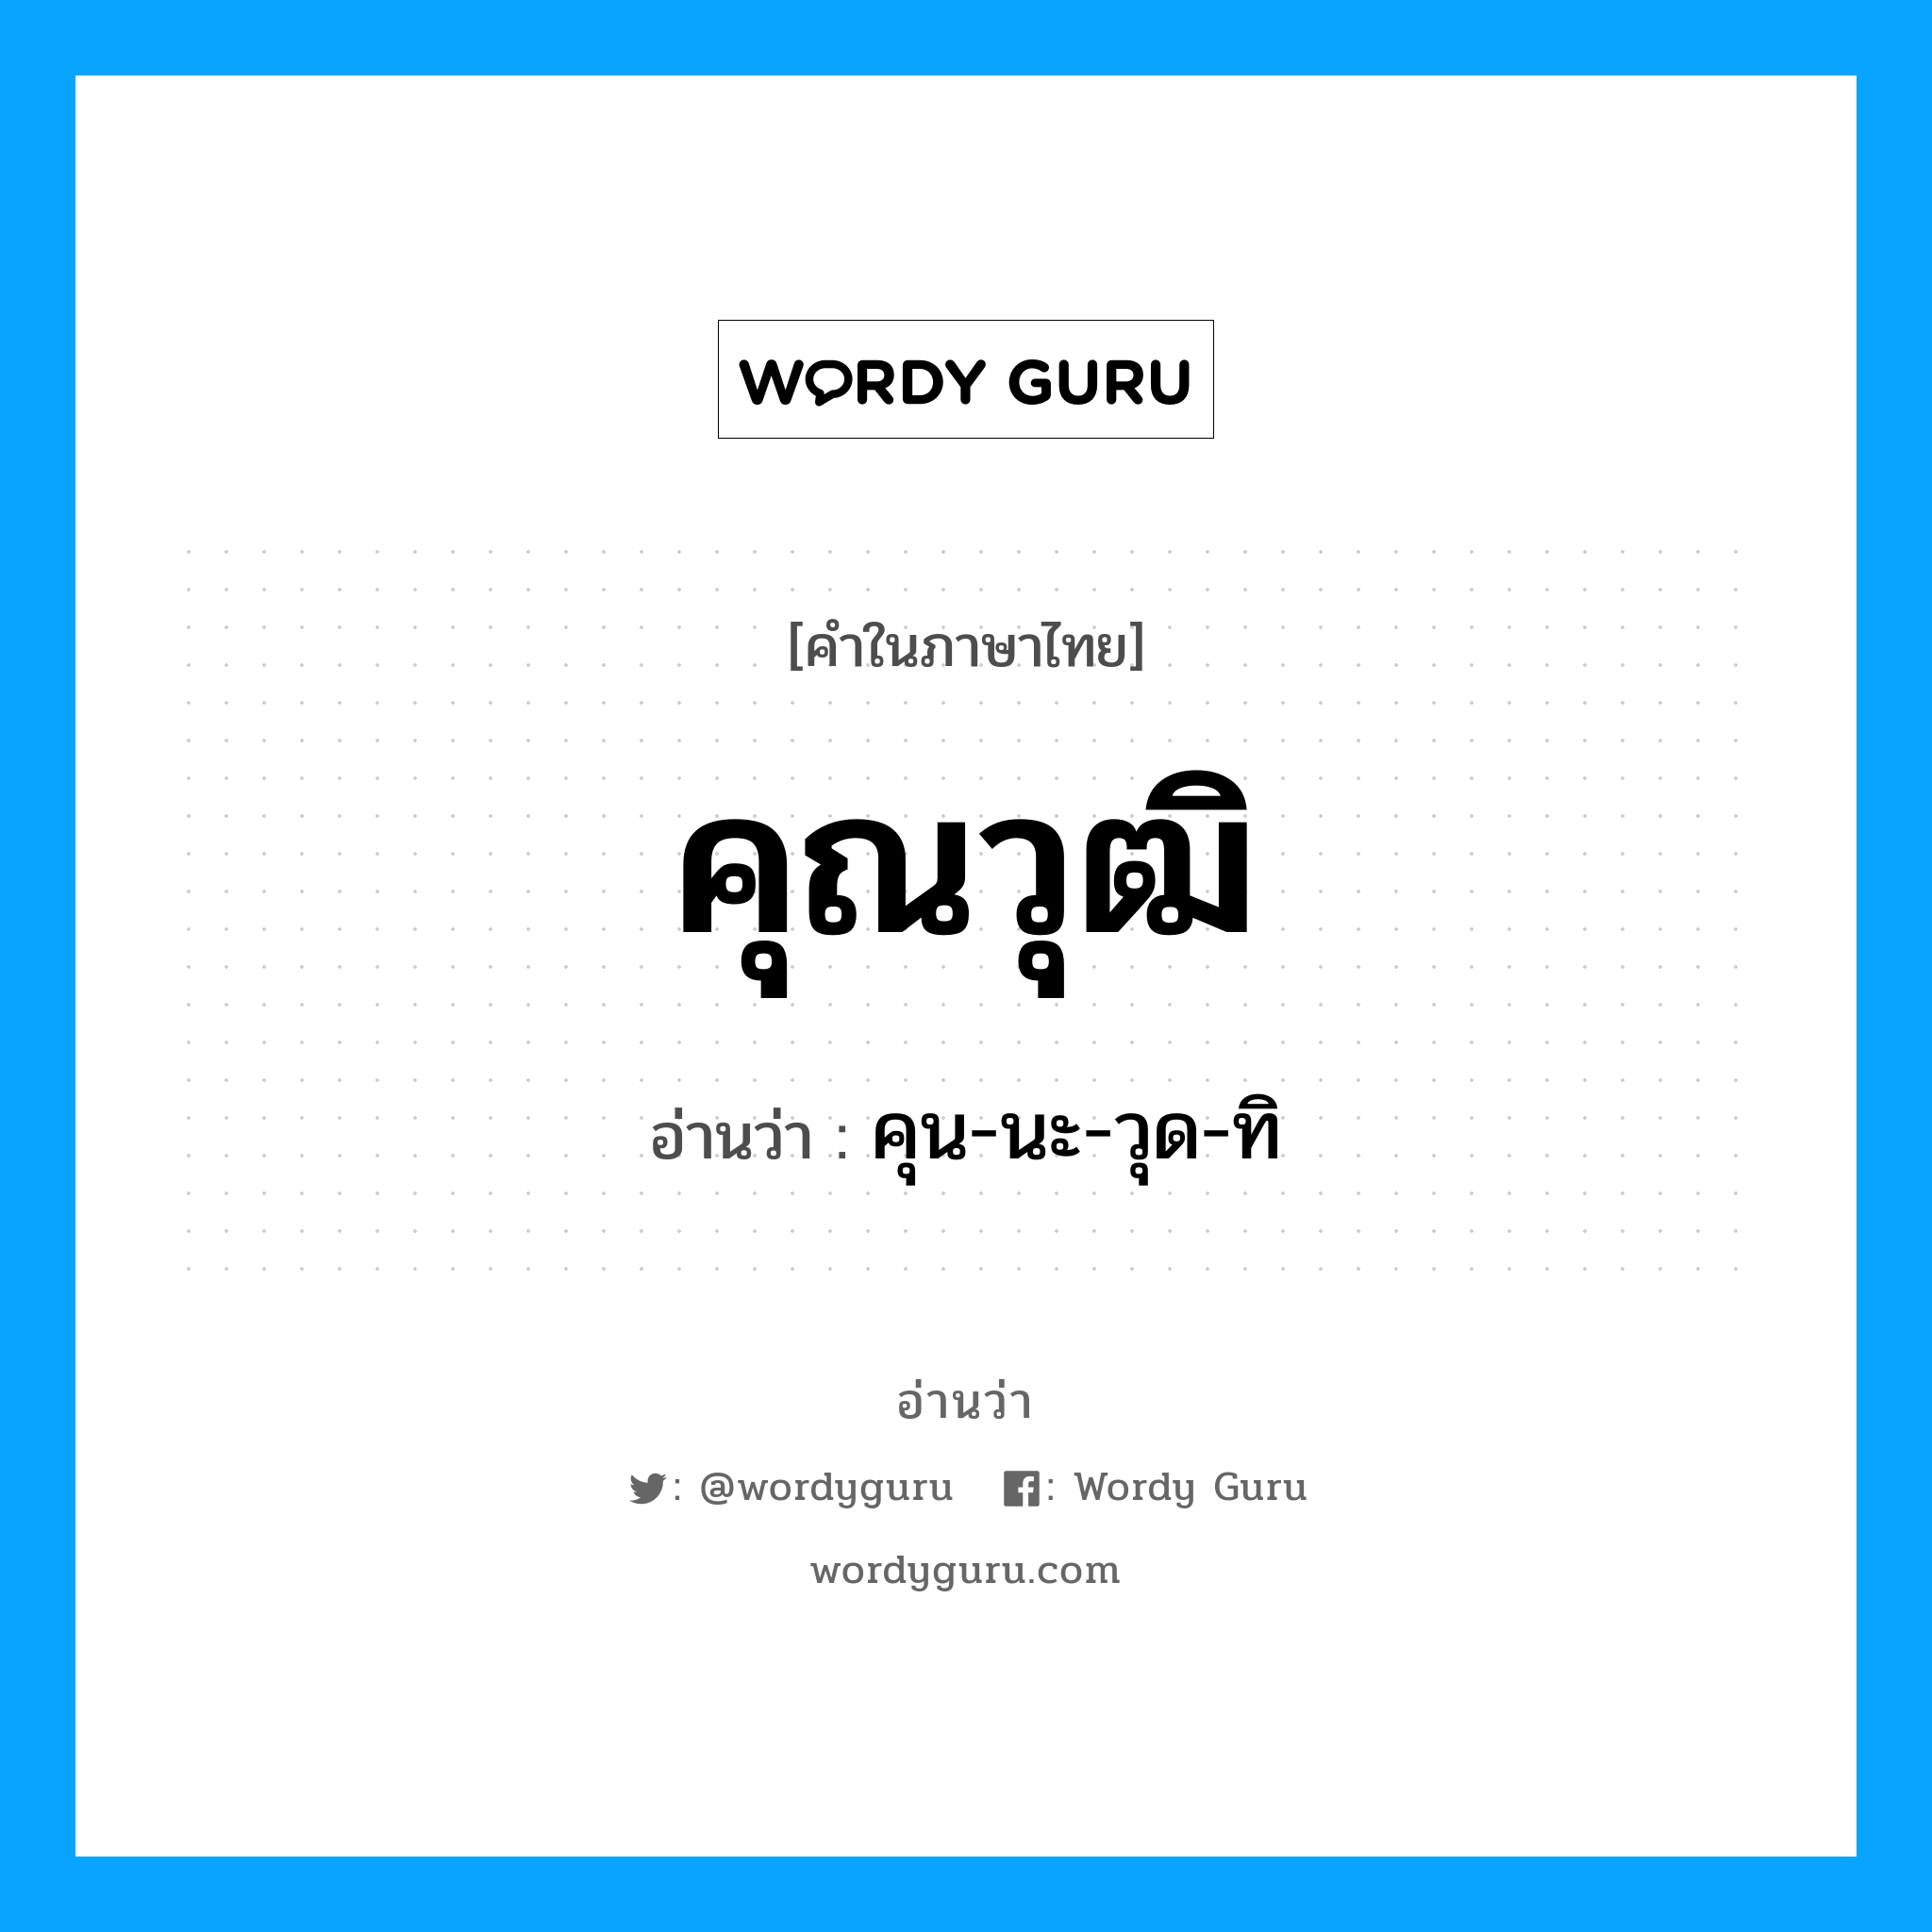 คุน-นะ-วุด-ทิ เป็นคำอ่านของคำไหน?, คำในภาษาไทย คุน-นะ-วุด-ทิ อ่านว่า คุณวุฒิ